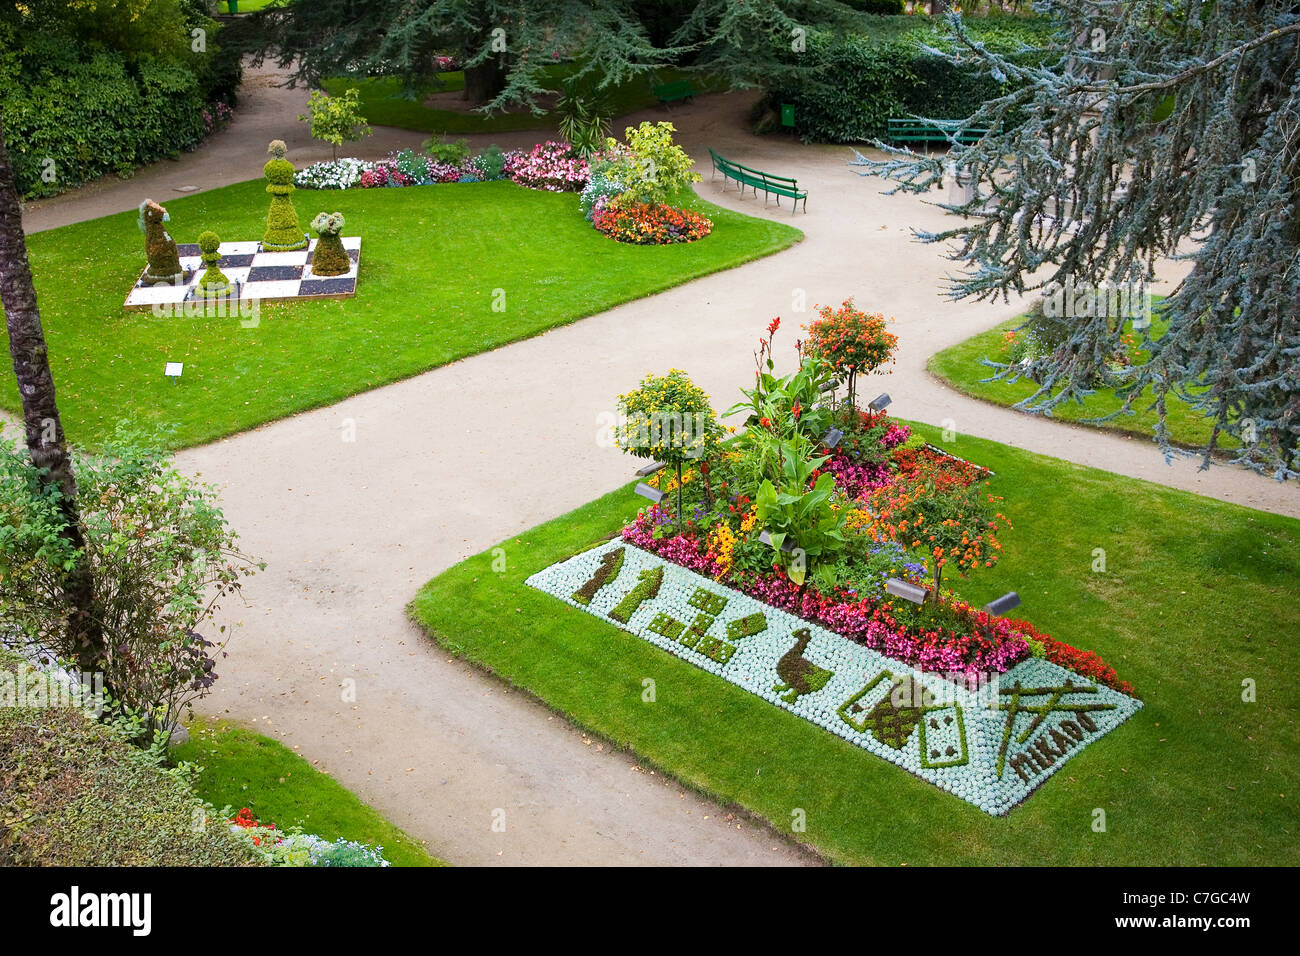 Giardino Botanico - Jardin des plantes - di Coutances, Normandia, Francia, con il tema dei giochi (scacchi, carte, ecc.) Foto Stock